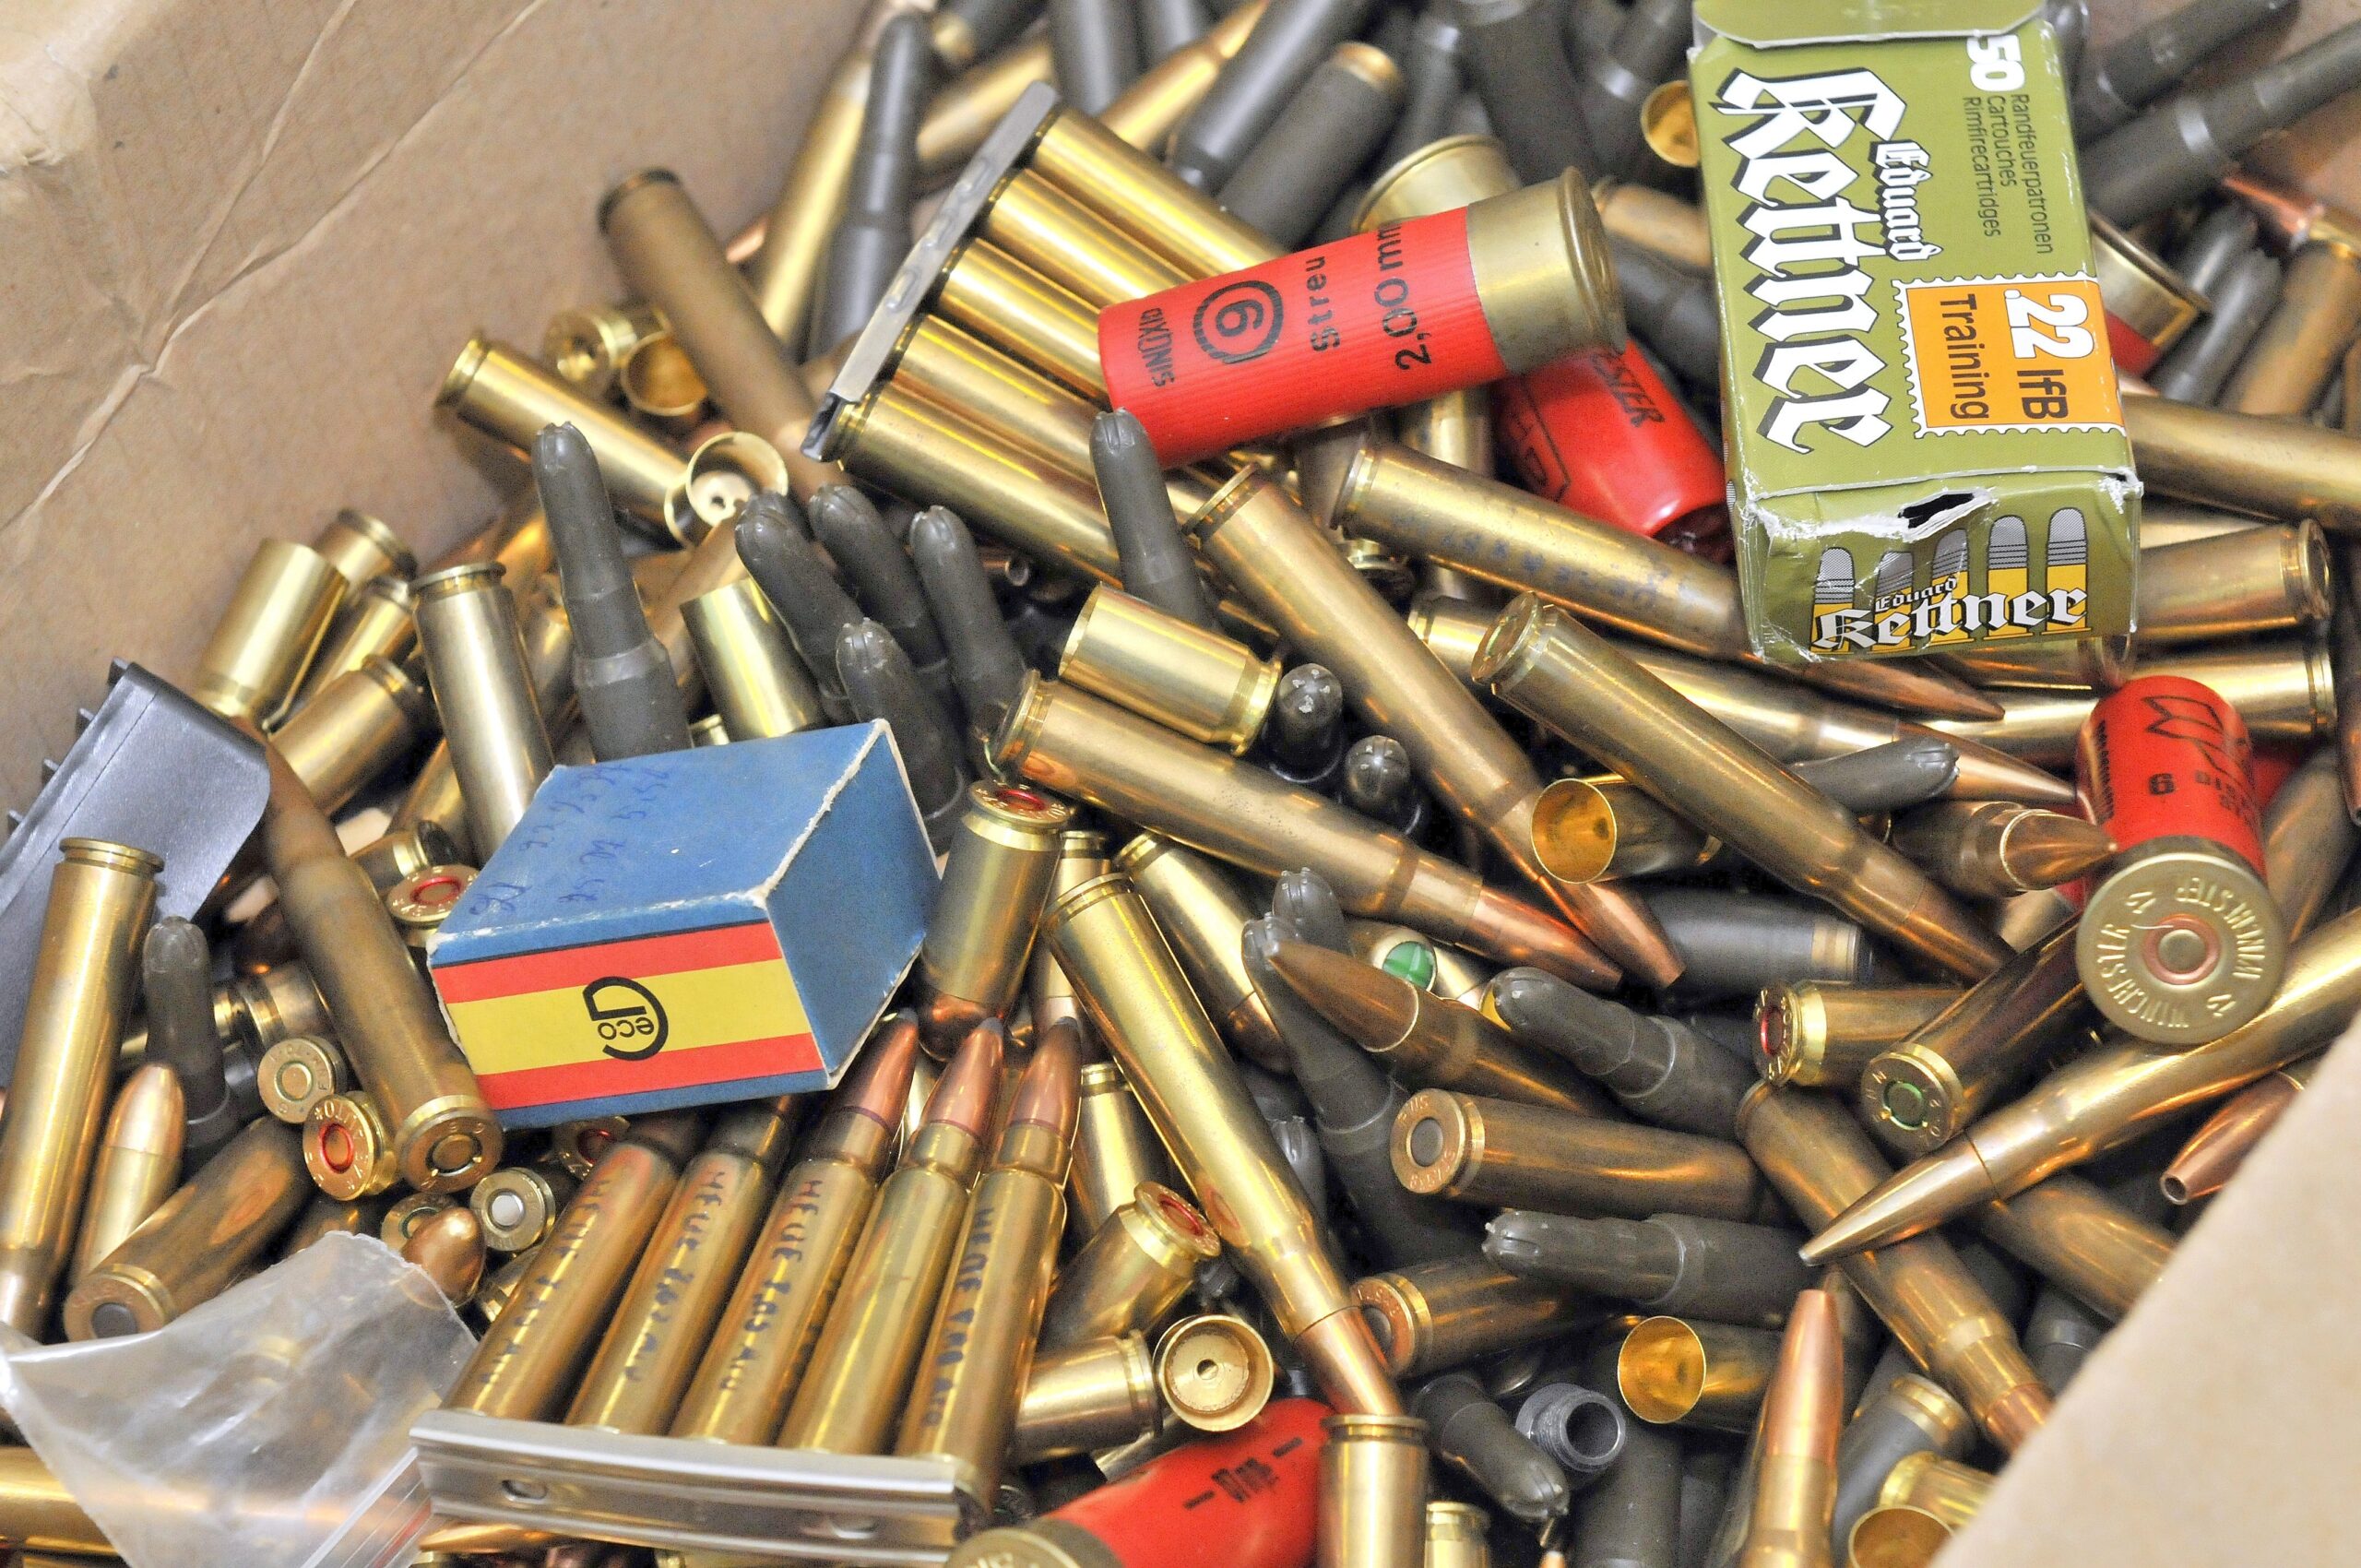 Die Polizei zeigt die die Pistolen und Gewehre, die Ende der vergangenen Woche in einer Wohnung in Bochold sicher gestellt worden sind.